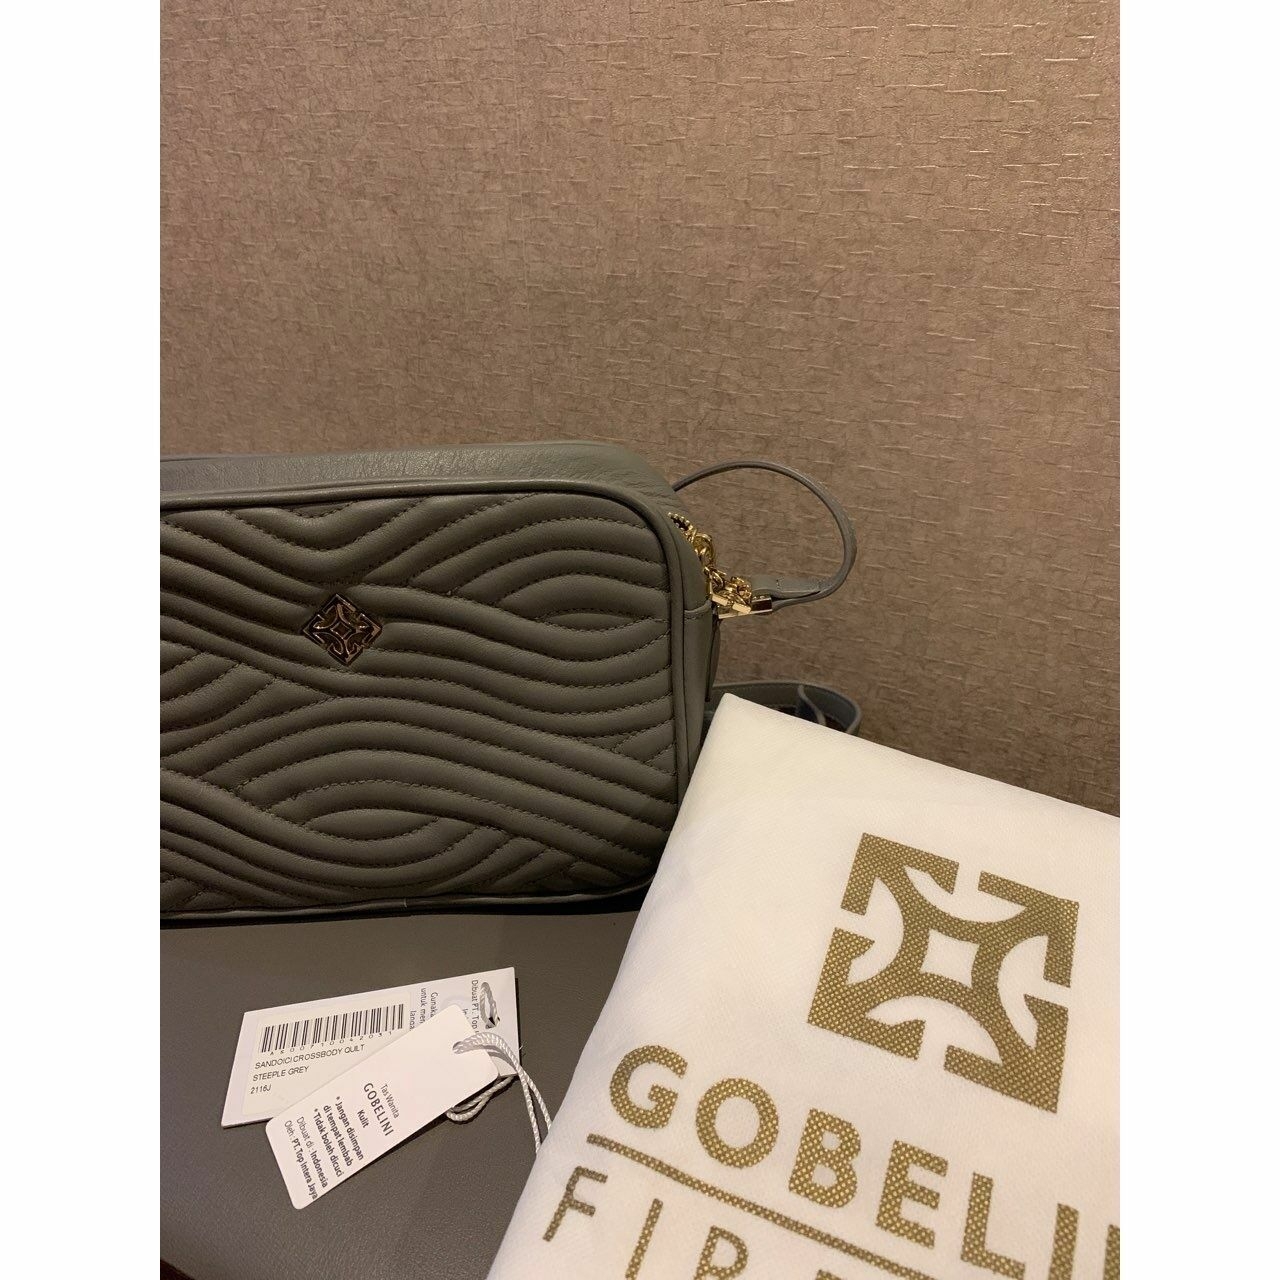 Gobelini Light Grey Sling Bag